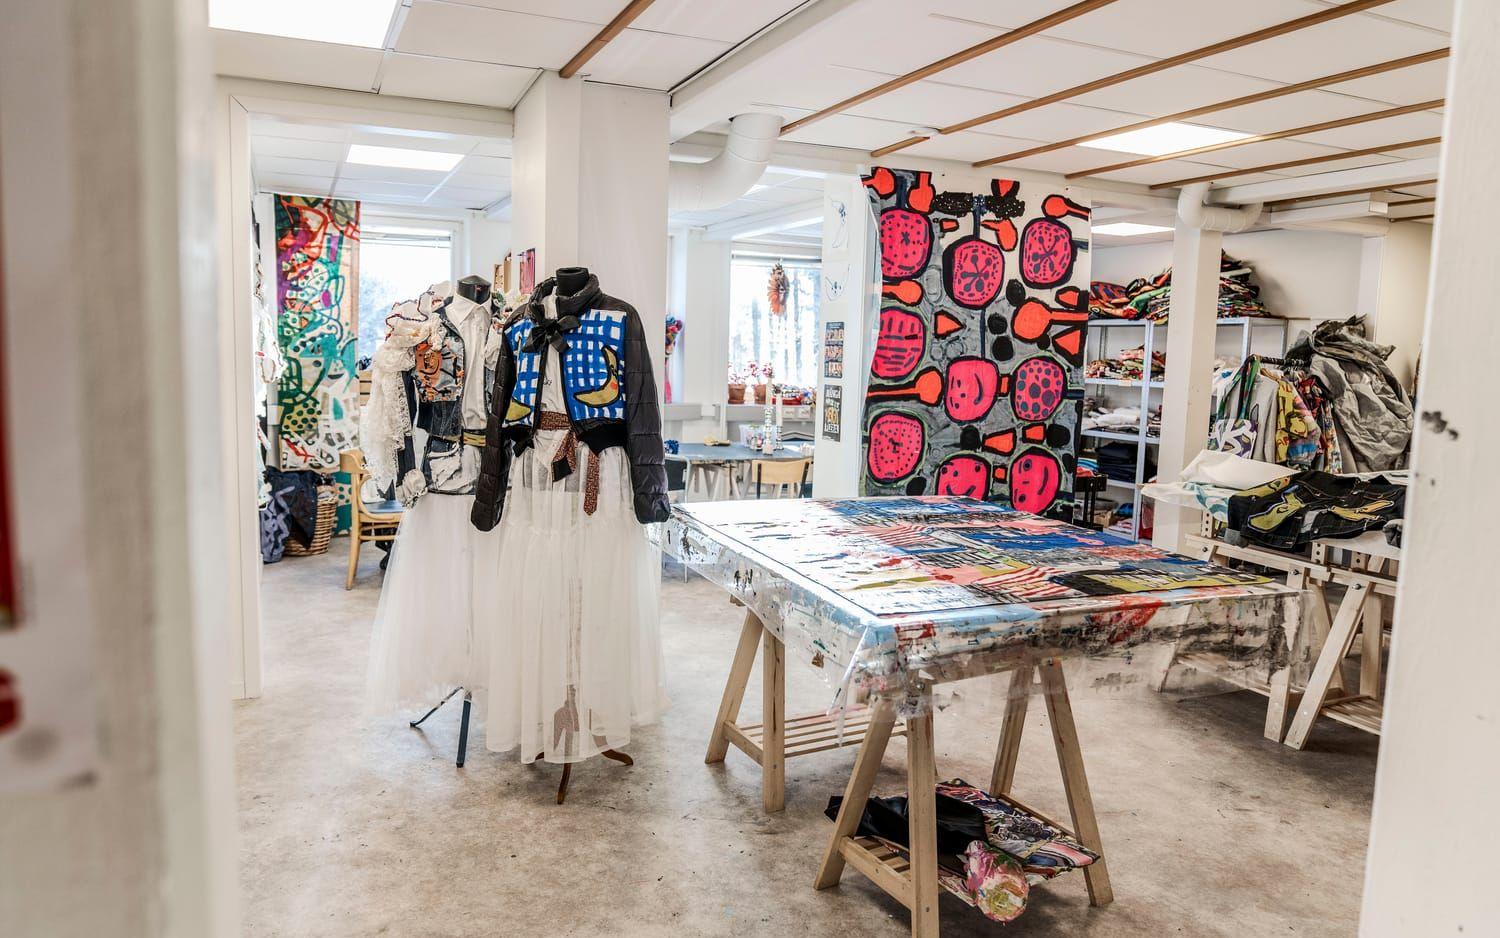 Kulturlabbets textilverkstad är full av färgstarka mönster och fantasieggande mode-kreationer. Konstnärerna har bland annat samarbetat med Musikhjälpen, Way out west och Röhsska museet.